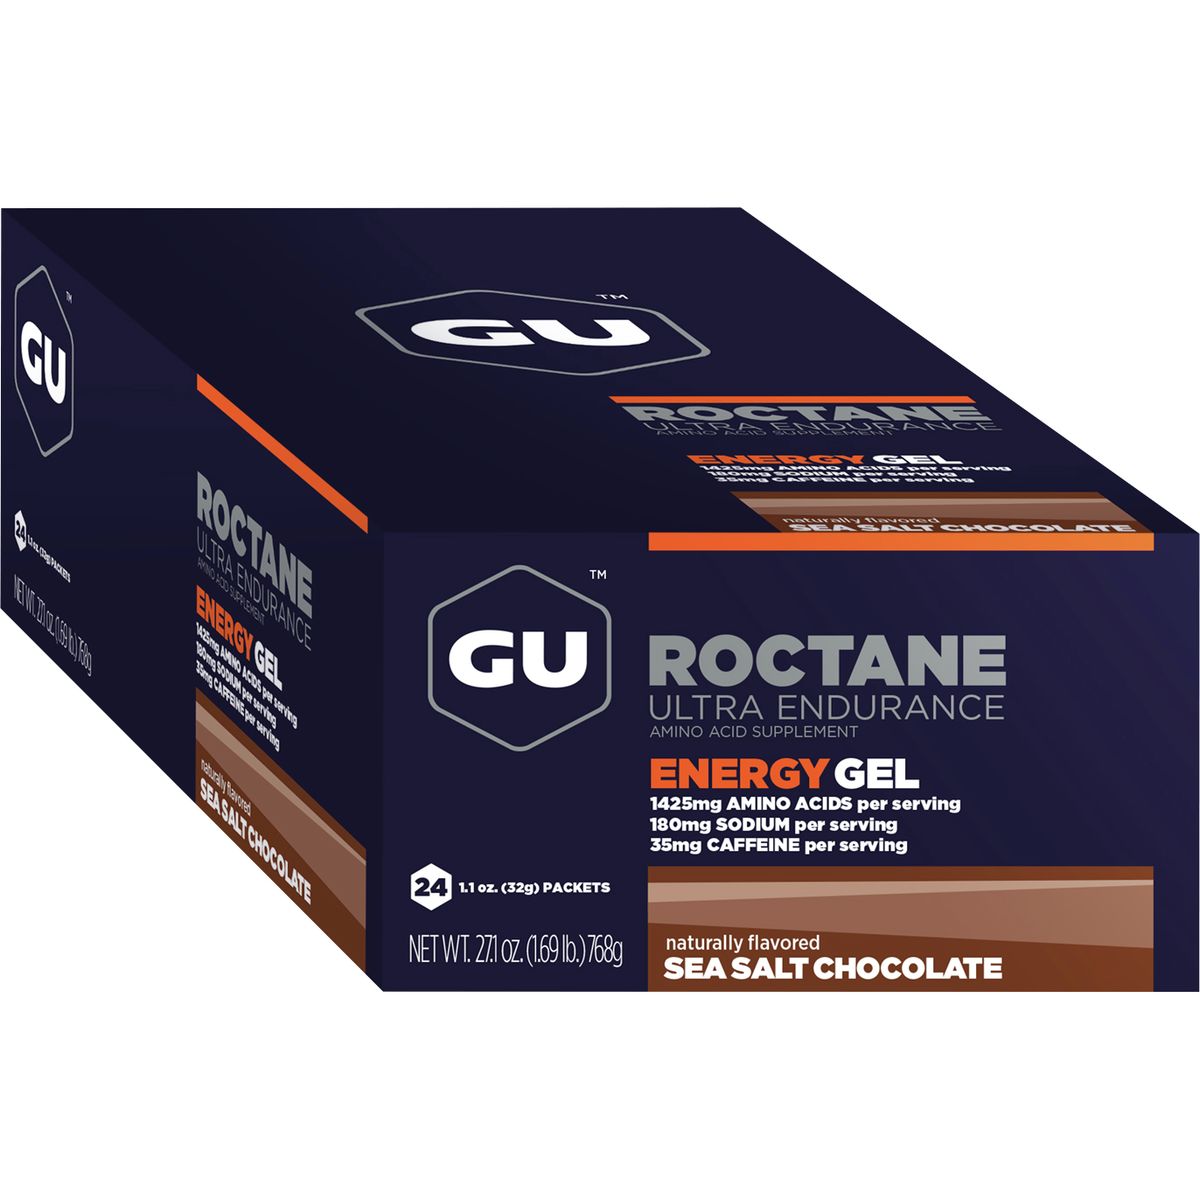 GU Roctane Energy Gel 24 Pack